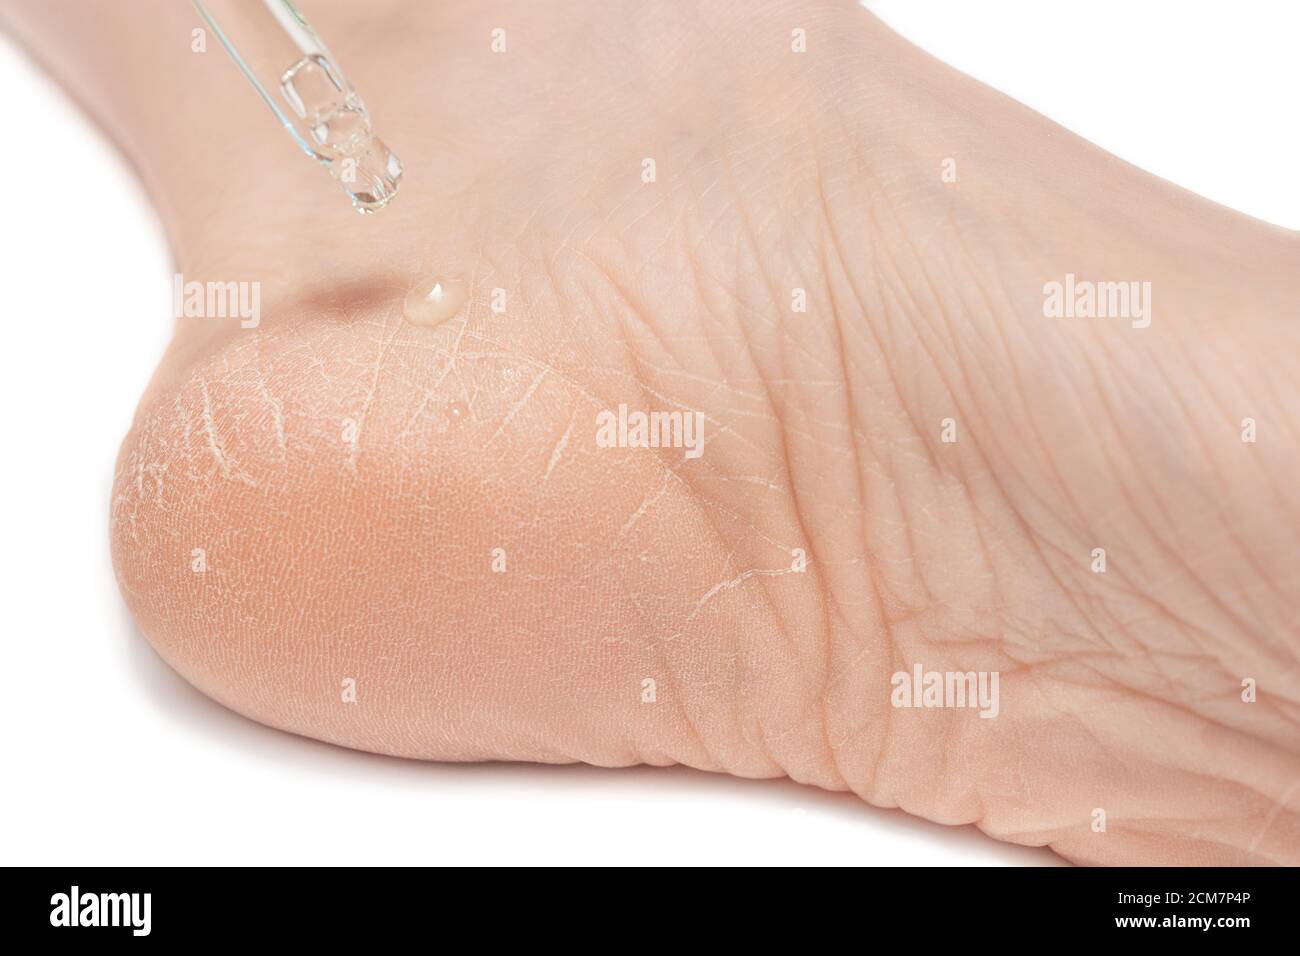 Primo piano del piede femminile, tallone con pelle secca, molto incrinata e crepe. Dermatologia, medicina, cosmetica concetto piedi umani Foto Stock